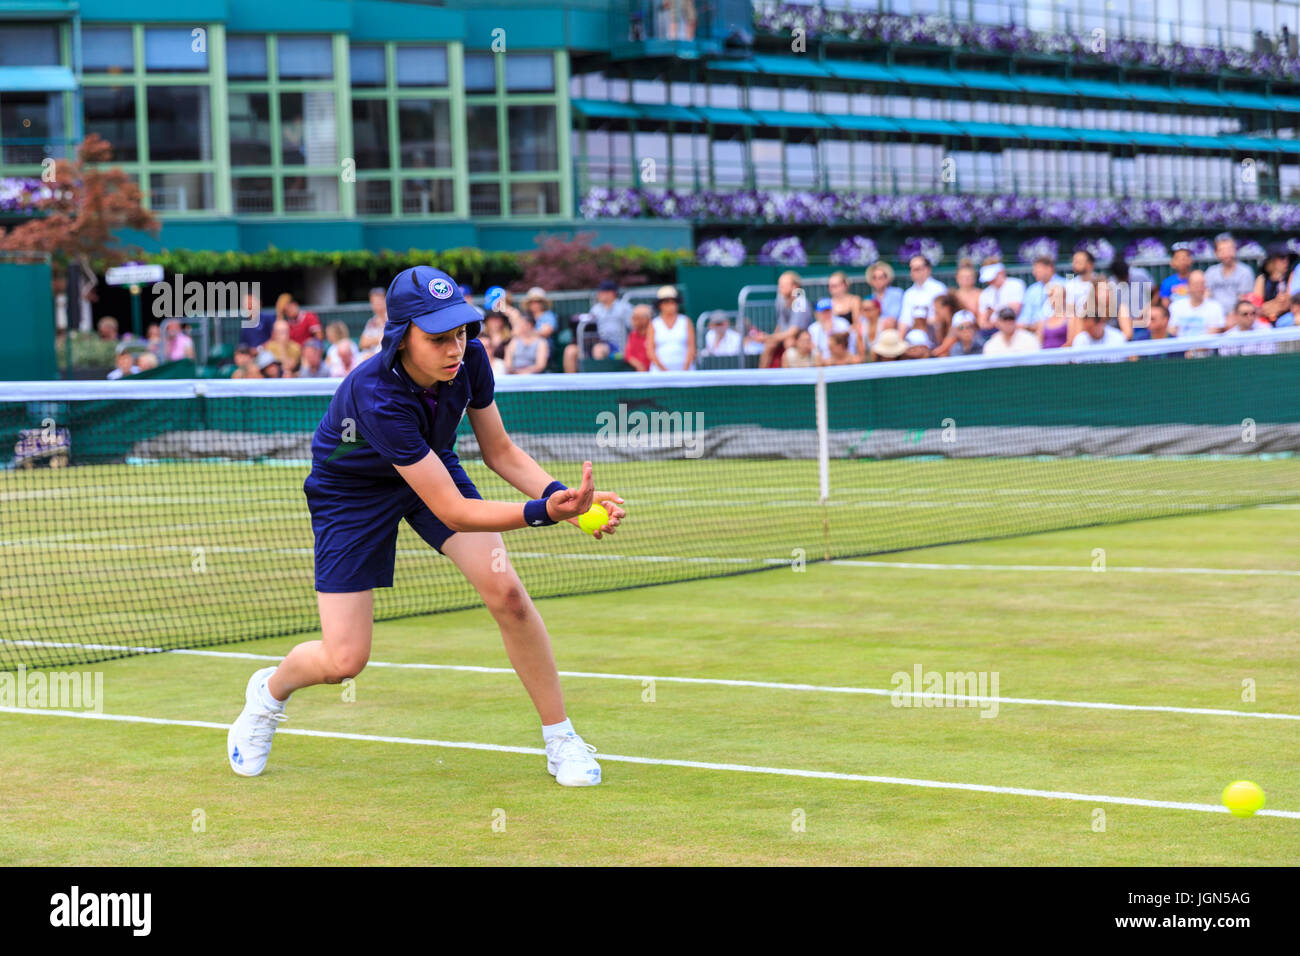 Ein Wimbledon-Balljunge wirft einen Ball an den Wimbledon Tennis  Weltmeisterschaften 2017, All England Lawn Tennis and Croquet Club, London,  UK Stockfotografie - Alamy